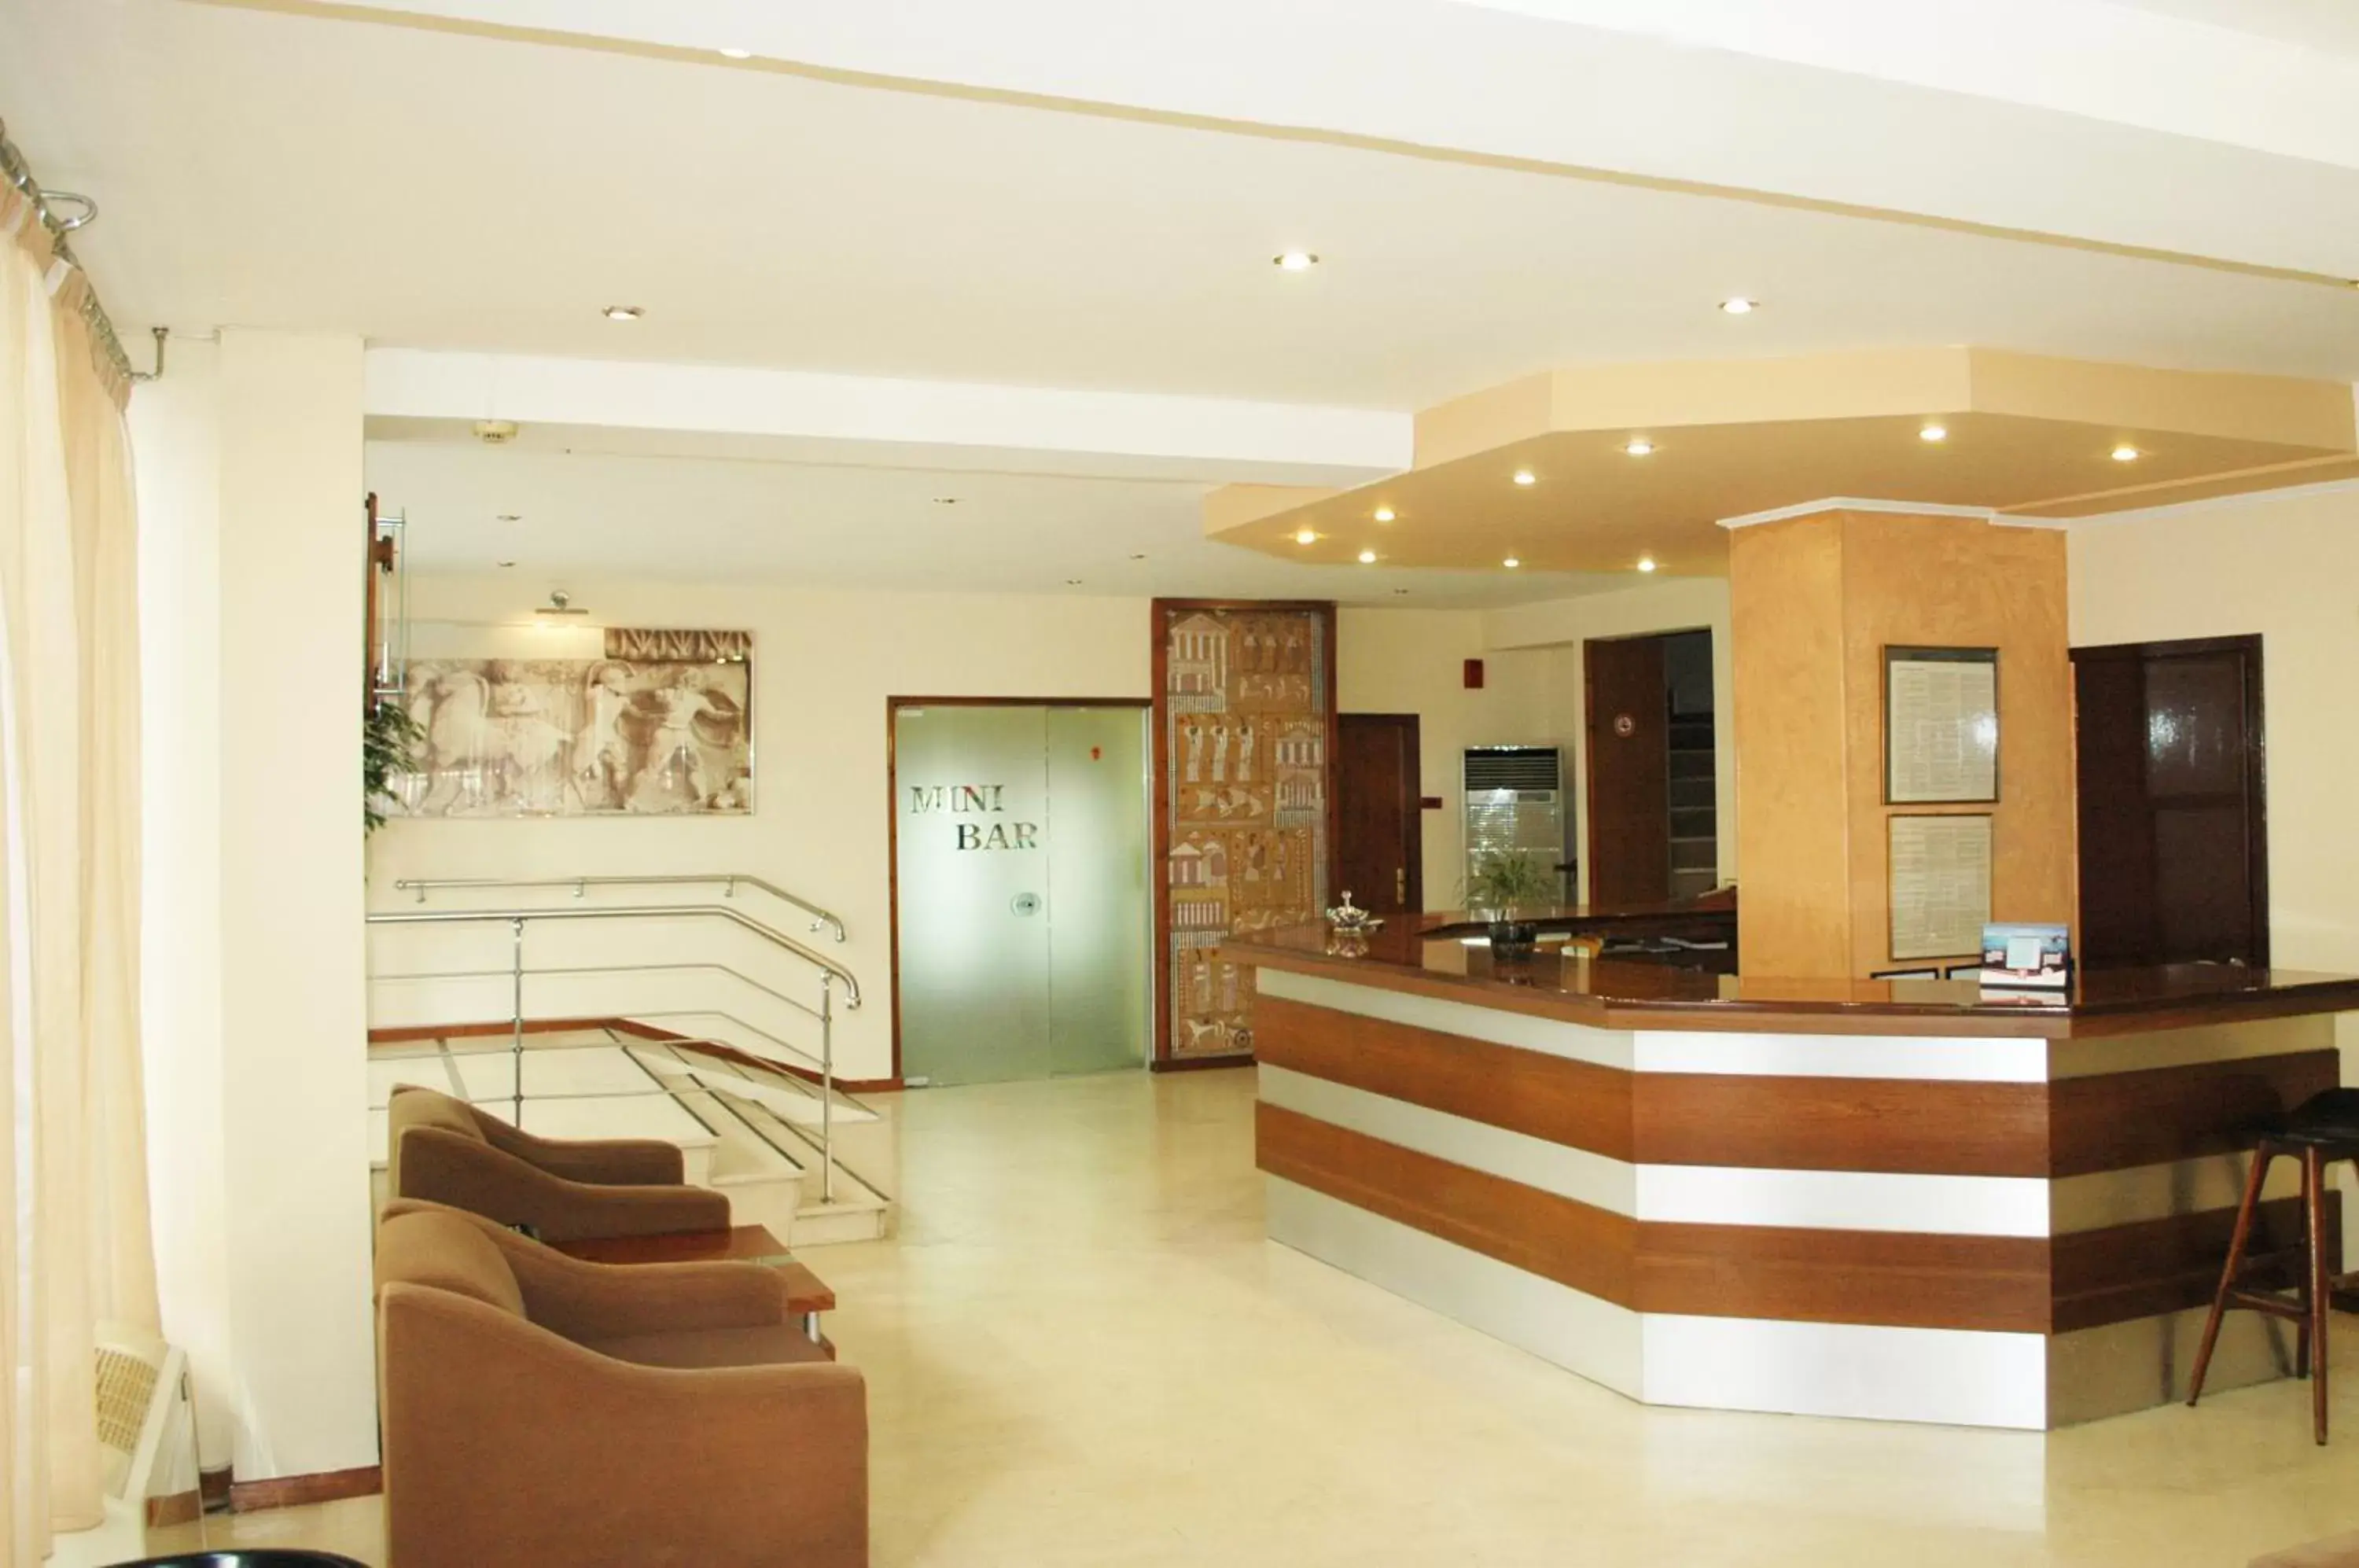 Lobby or reception, Lobby/Reception in Omiros Hotel